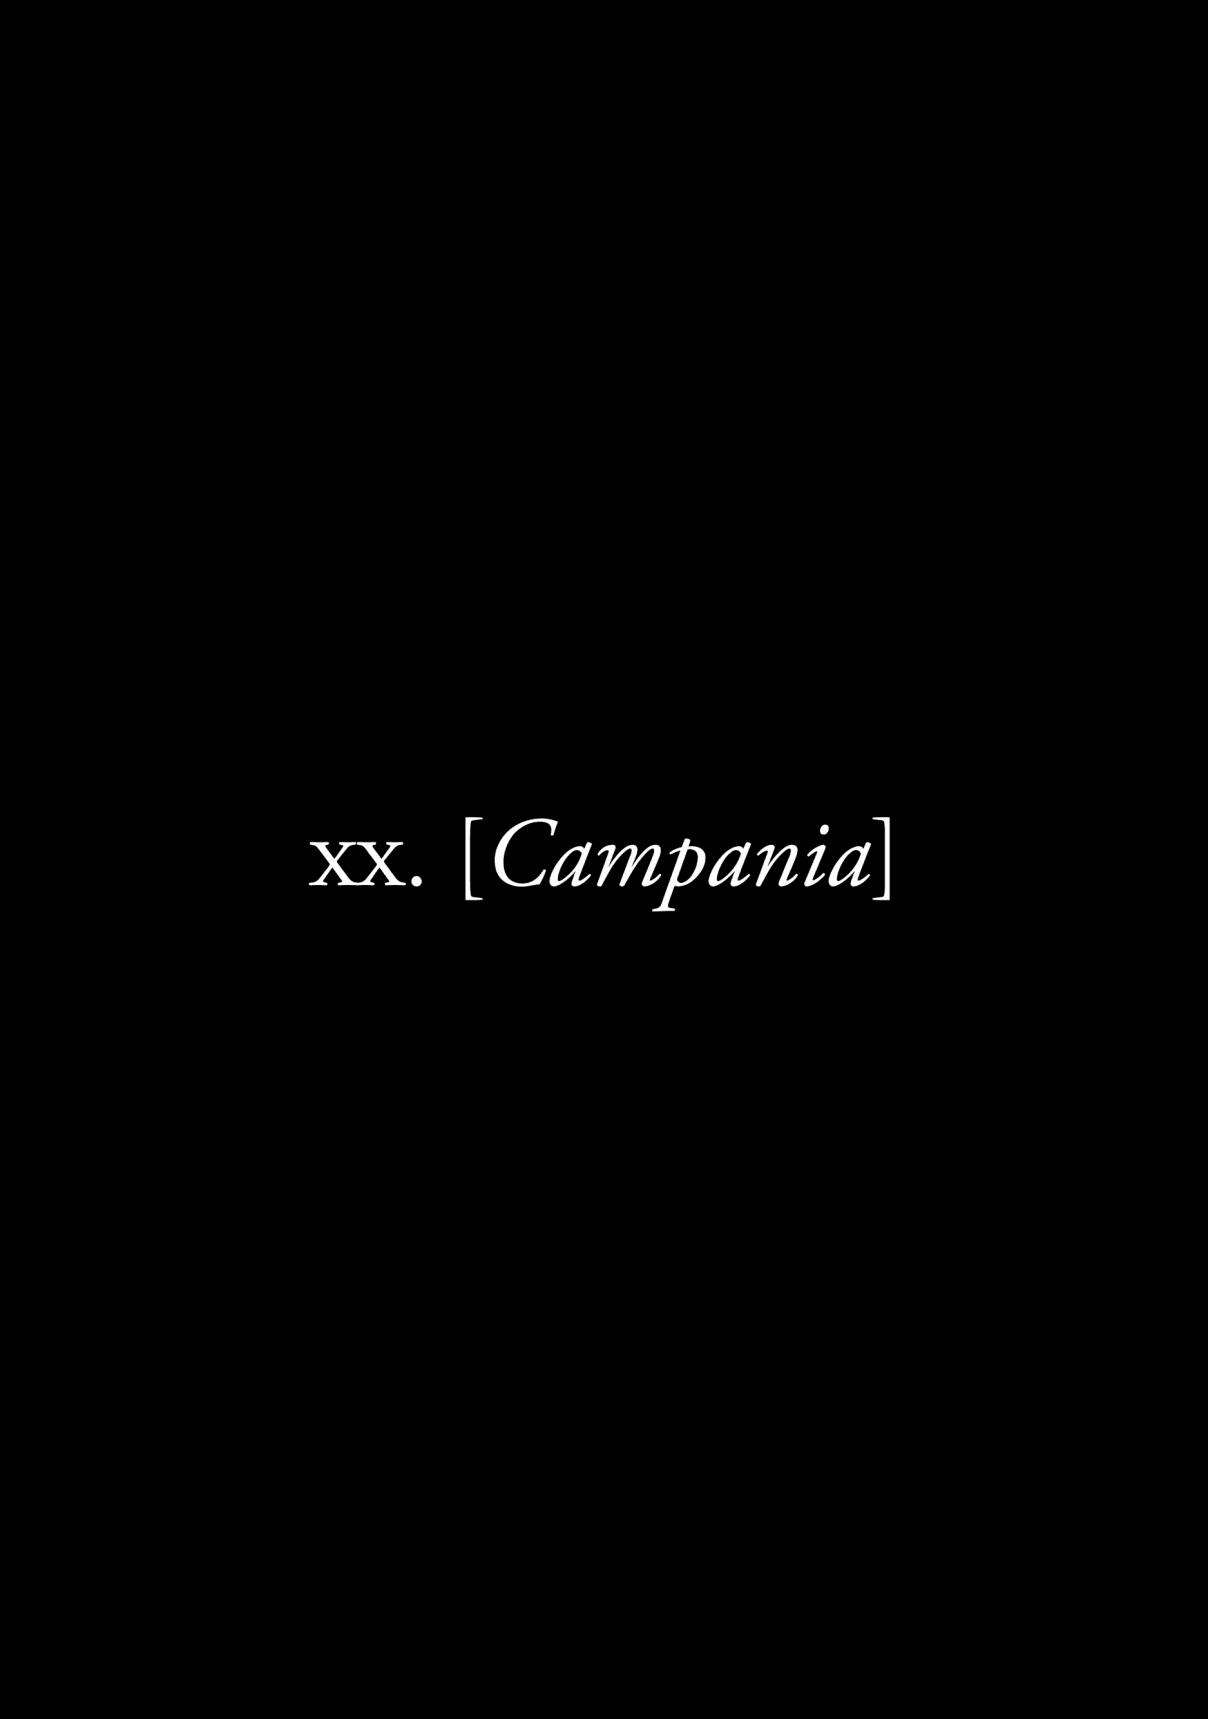 Plinivs Vol. 3 Ch. 20 Campania